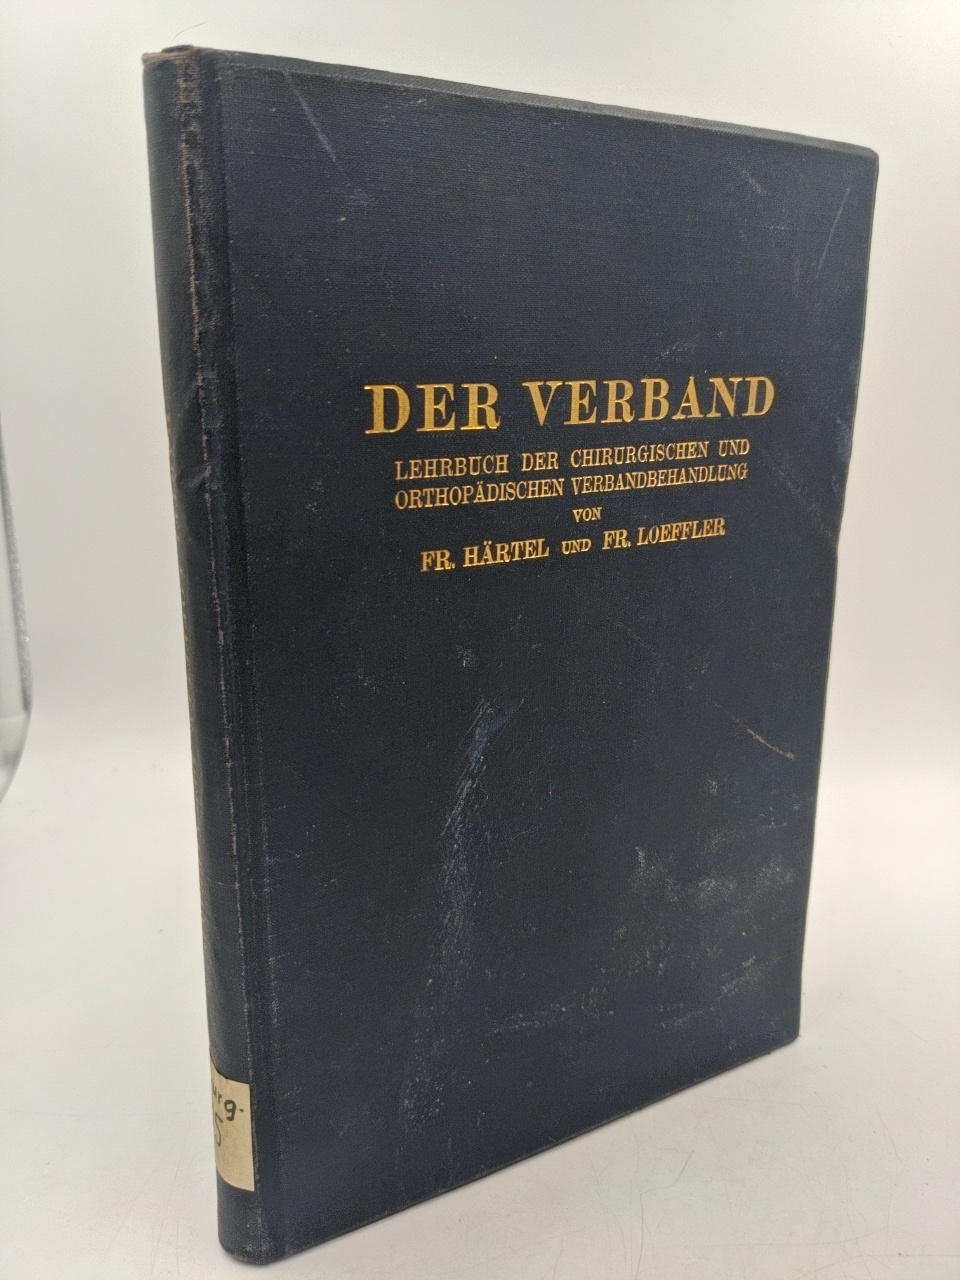 Härtel, Fritz und Friedrich Loeffler:  Der Verband : Lehrbuch der chirurgischen und orthopädischen Verbandbehandlung. 